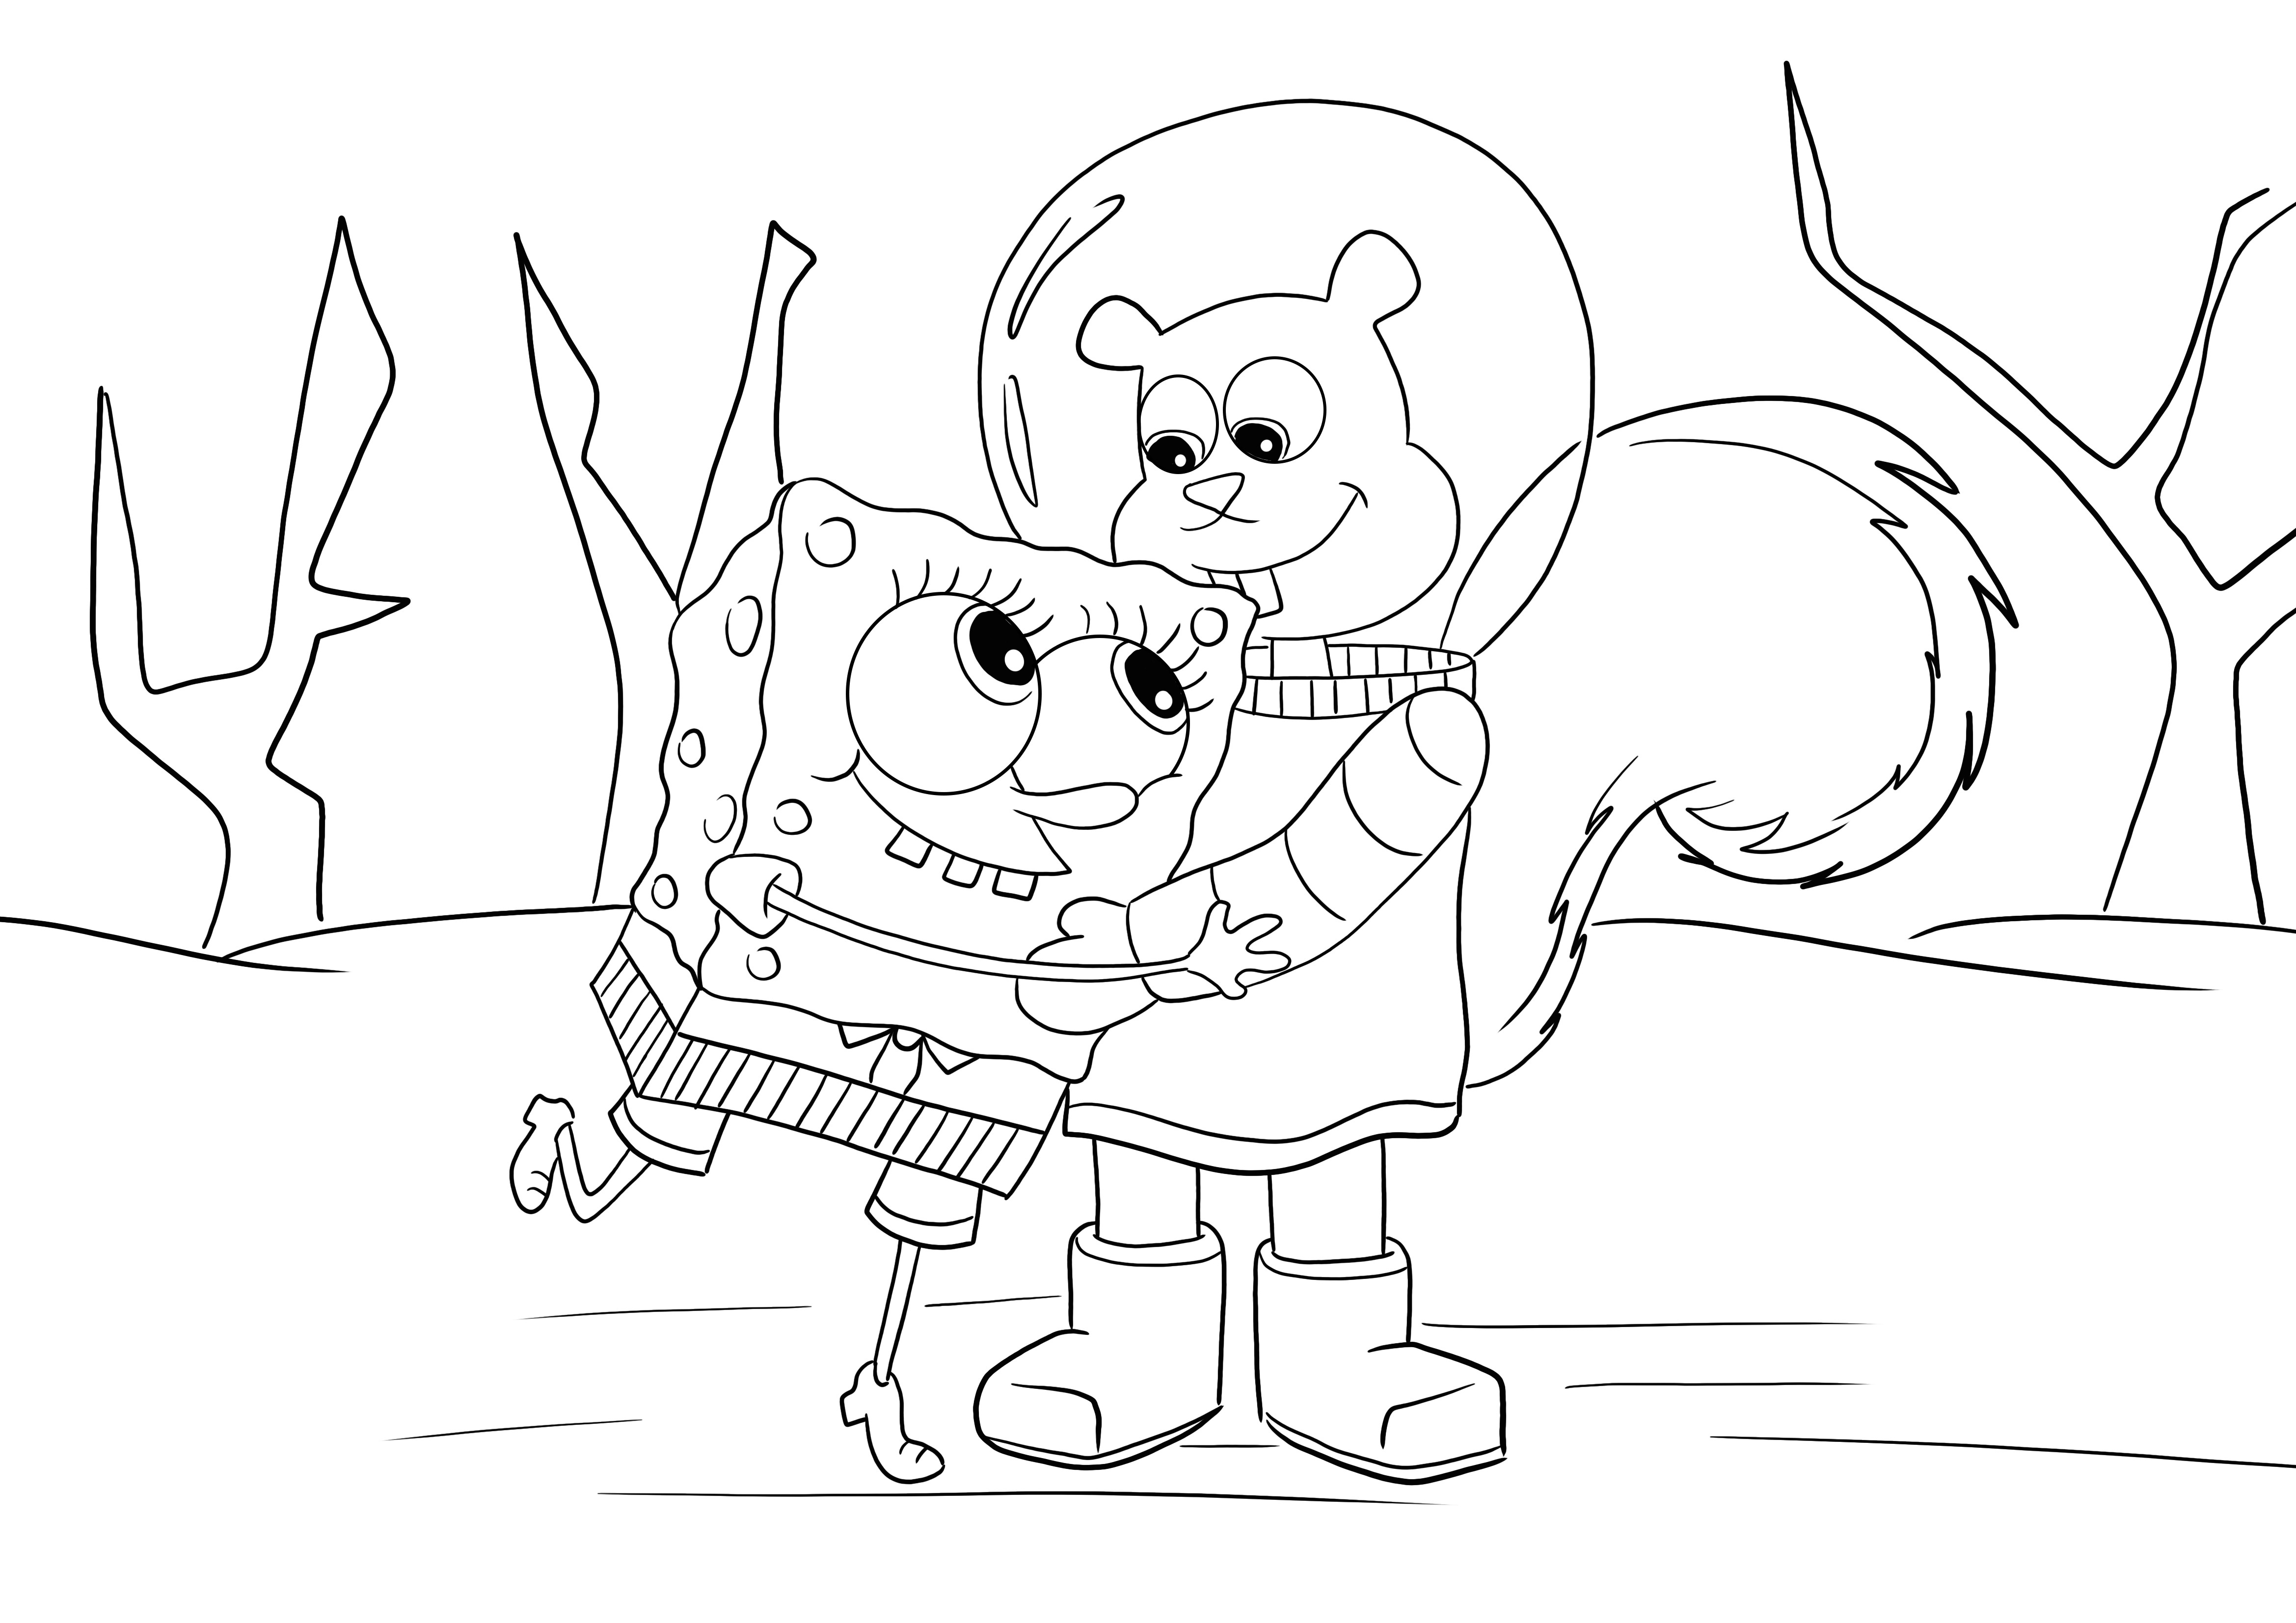 Gambar Sponge Bob dan Sandy Chick yang dapat dicetak gratis untuk diwarnai untuk anak-anak